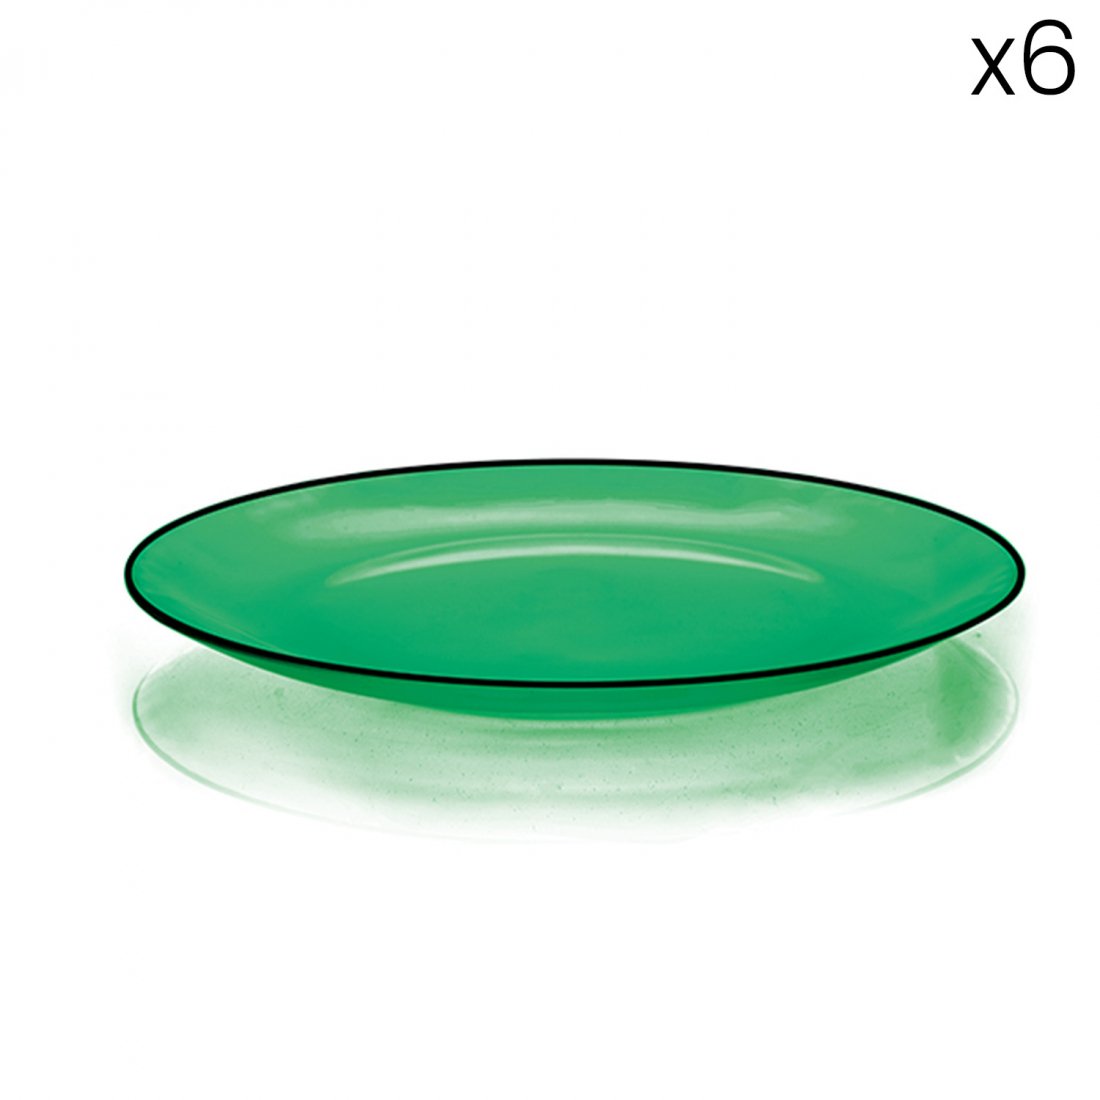 6 Glass Dessert Plates - Green